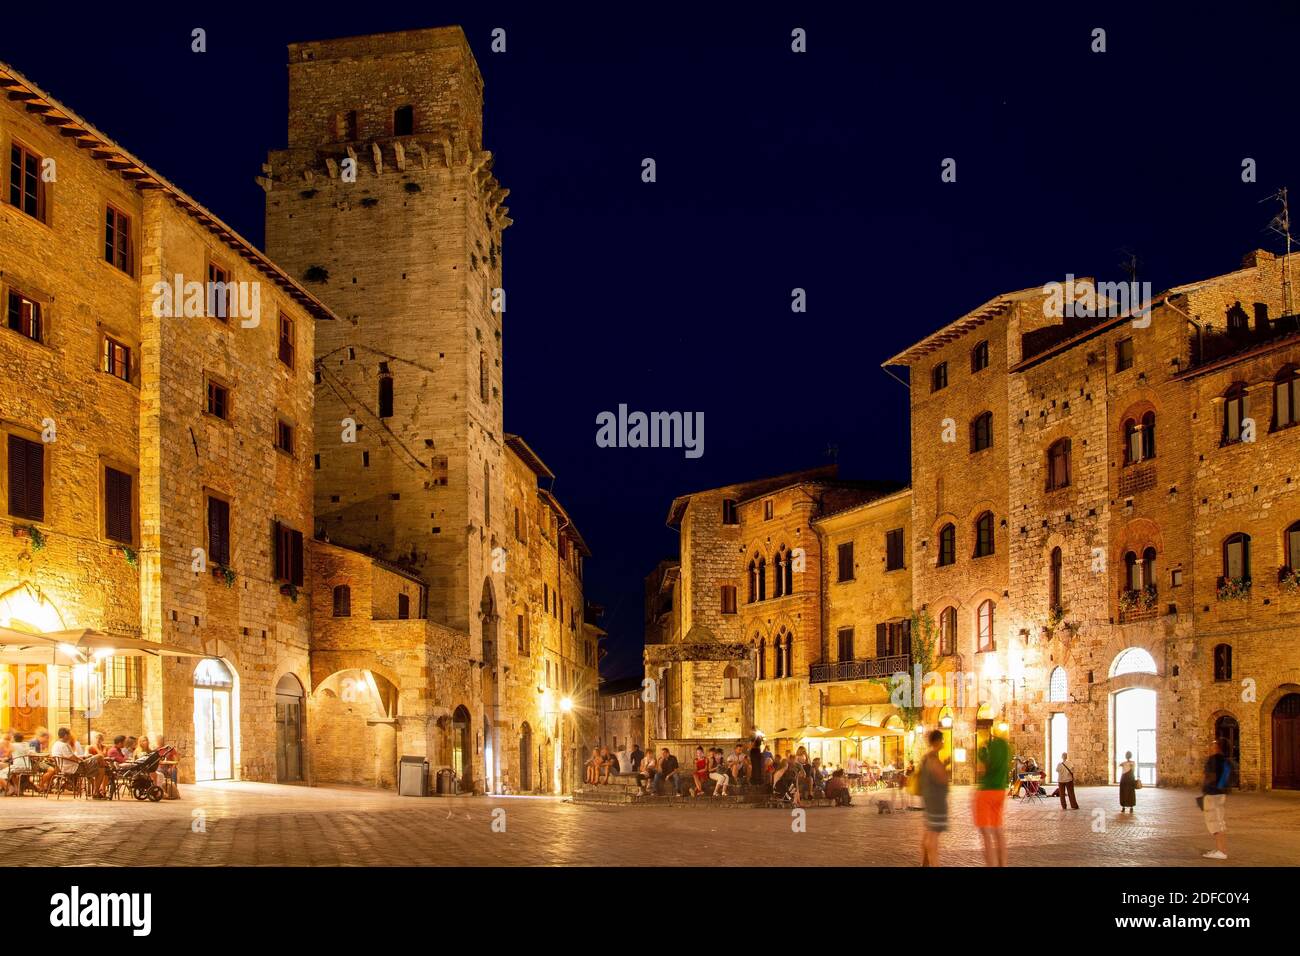 San Gimignano ist eine italienische Kleinstadt in der Provinz Siena, Toskana, mit einem mittelalterlichen Stadtkern und wird auch „Mittelalterliches M Stock Photo